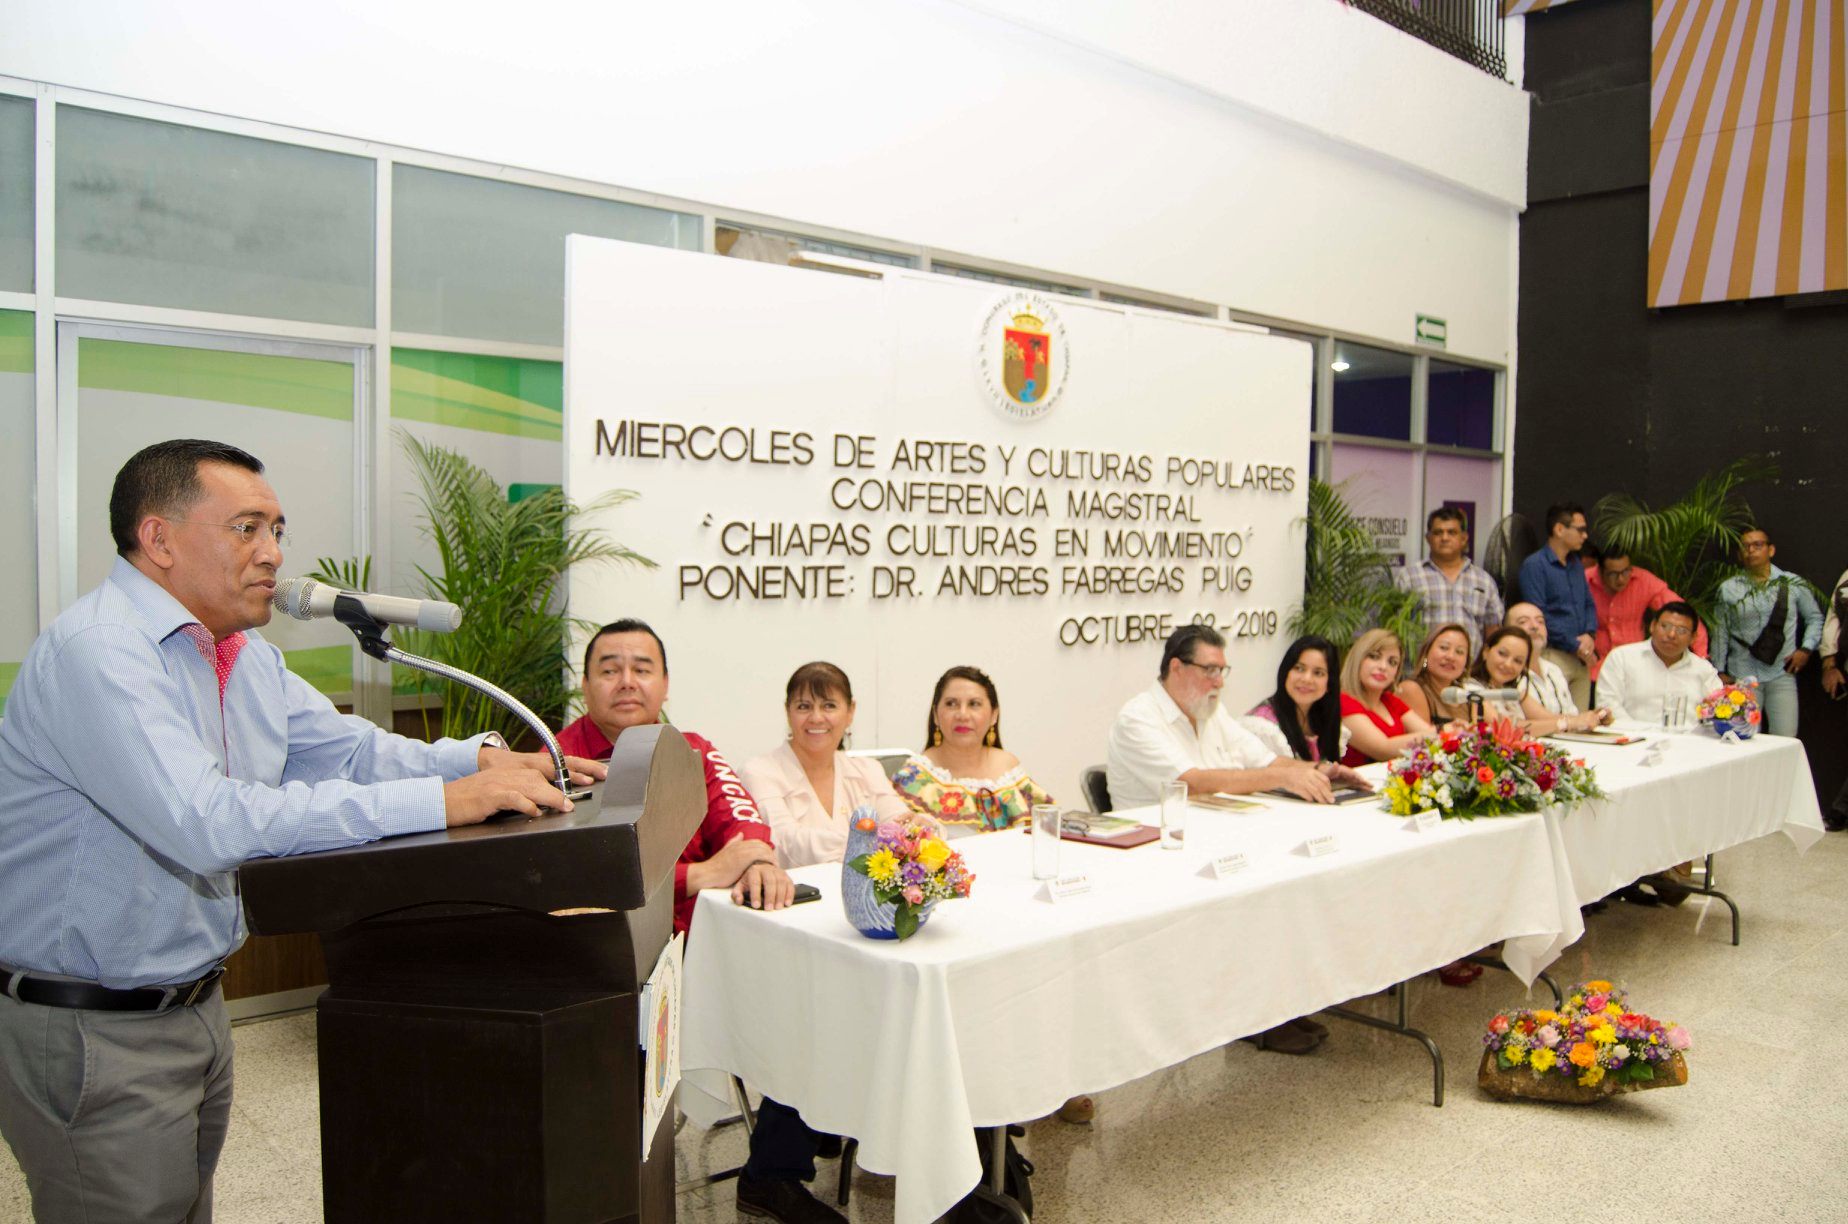 Presentan libro: “Chiapas, culturas en movimiento” de Andrés Fábregas Puig